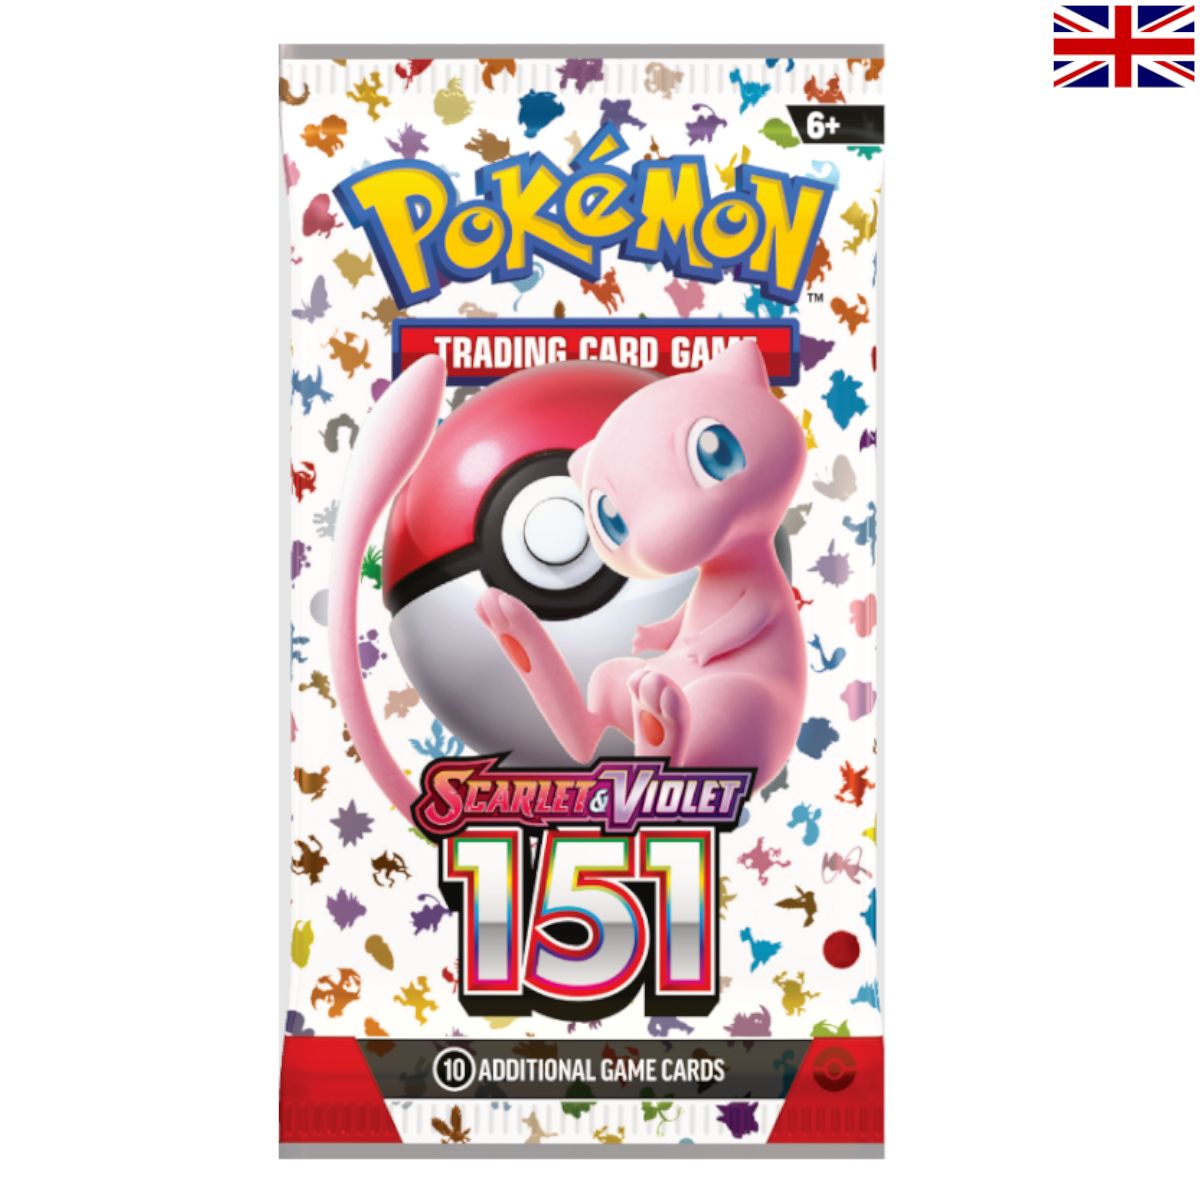 Pokémon - Scarlet & Violet 3.5: 151 Booster Englisch